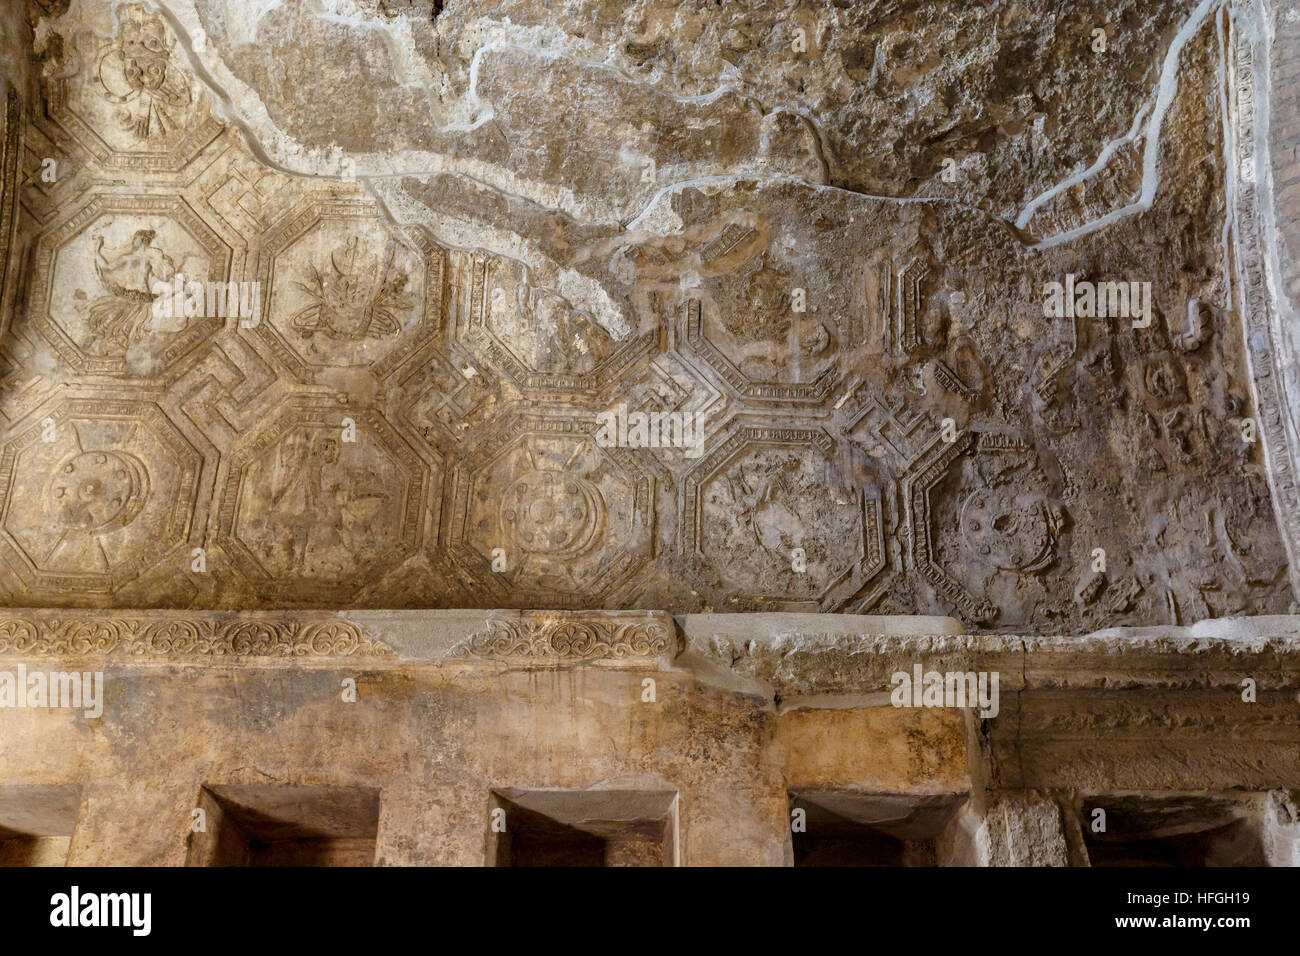 Soffitto in bagni Stabian a Pompei in Italia meridionale. UNESCO - Sito Patrimonio dell'umanità. Foto Stock